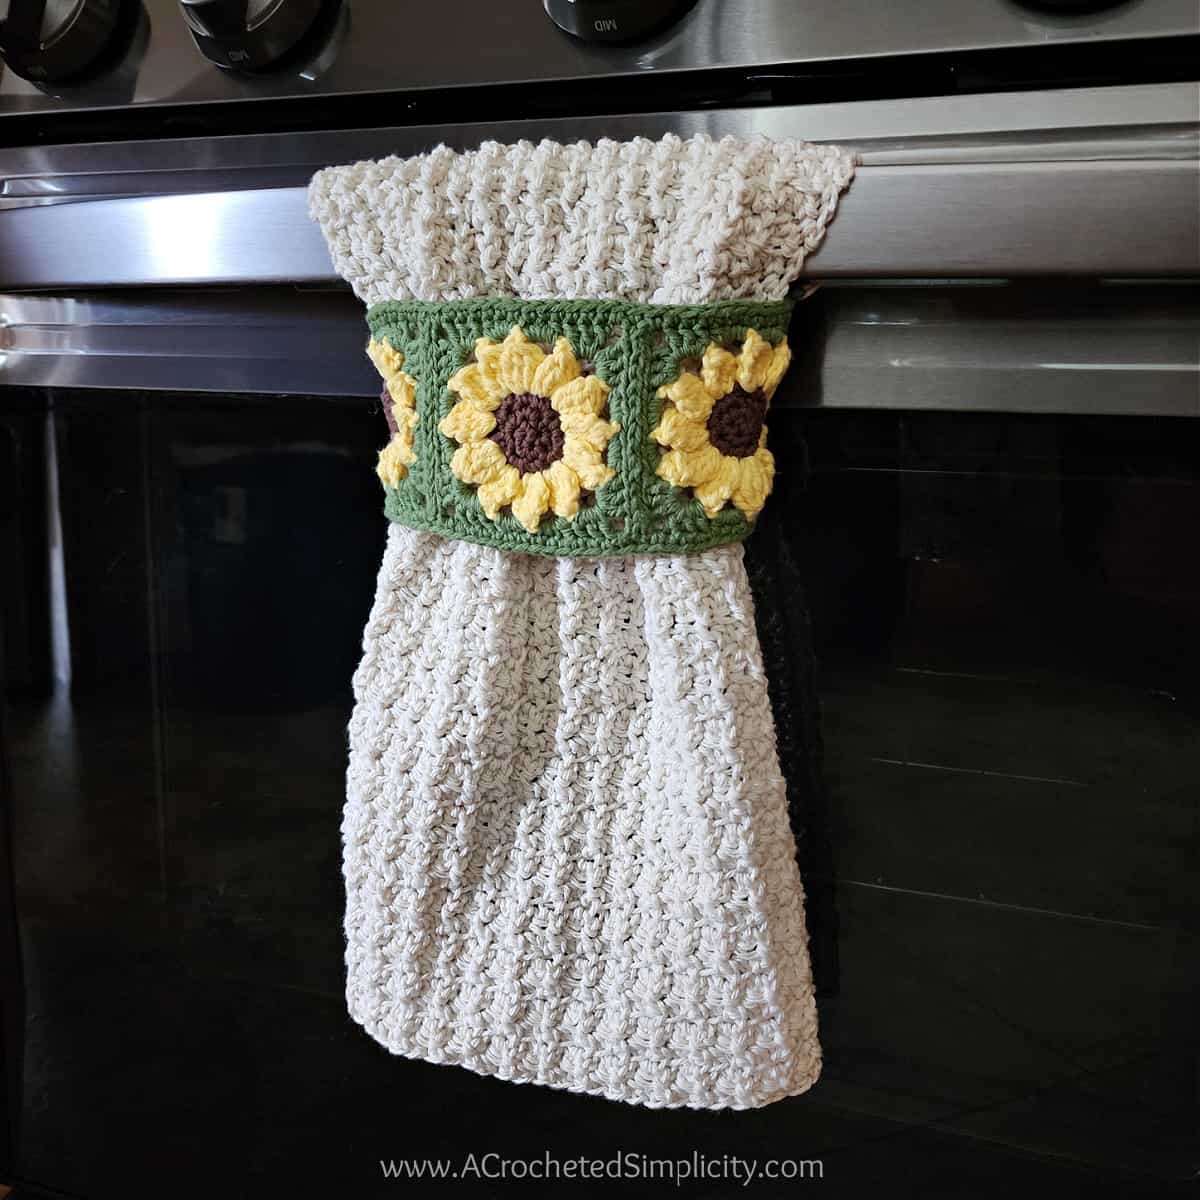 Sunflower motif crochet kitchen towel hanging on oven door.